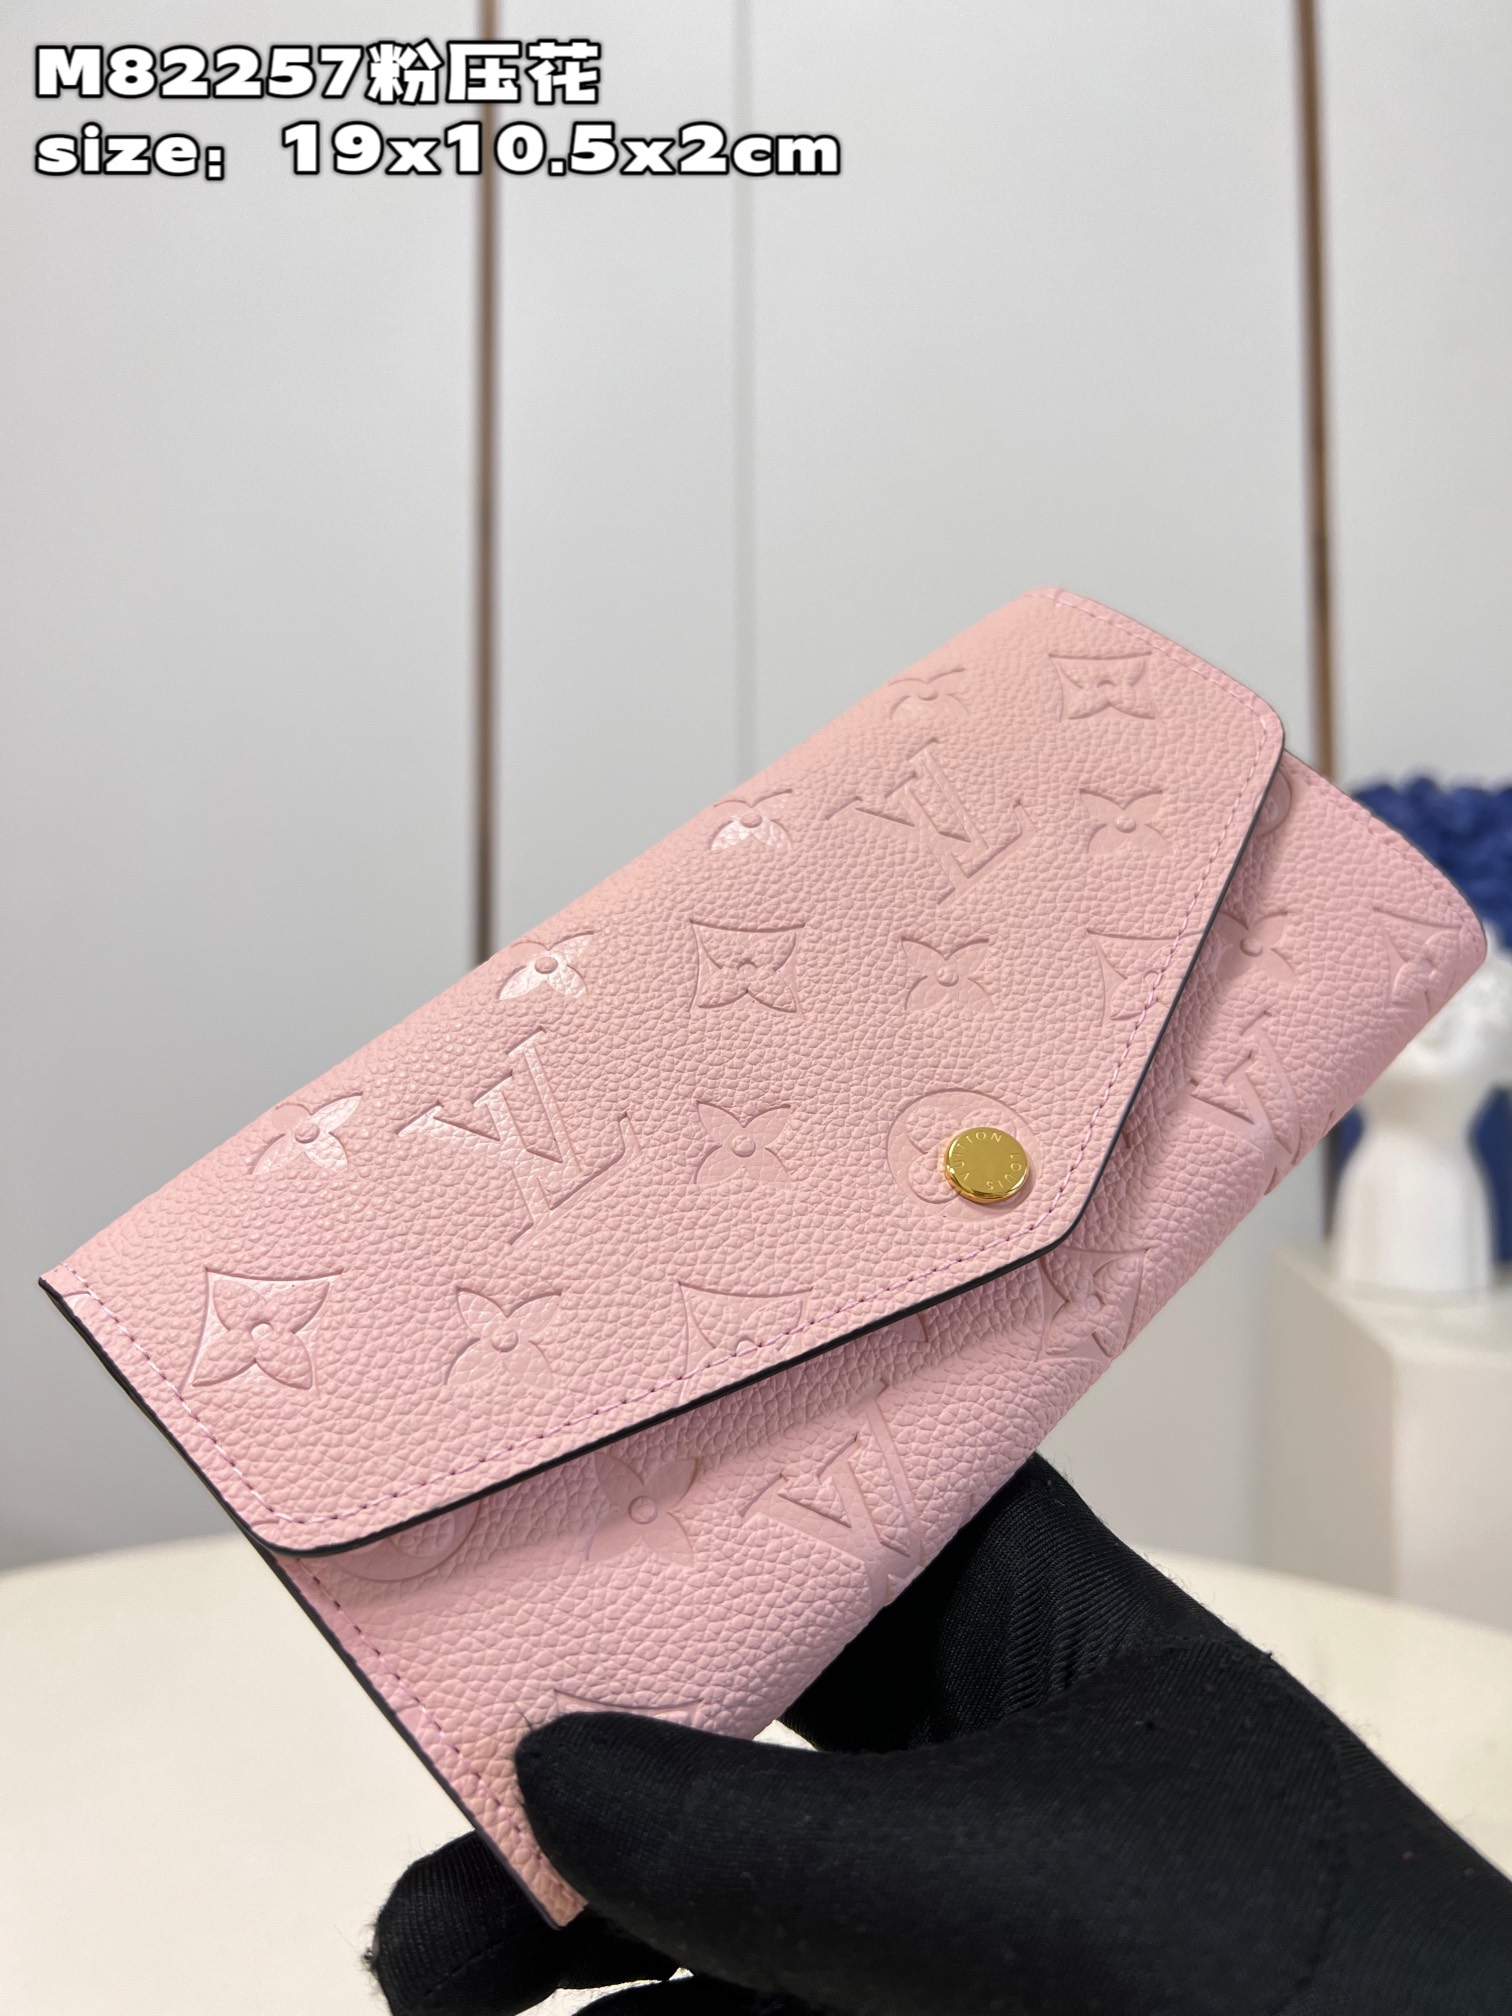 Louis Vuitton Wallet Replcia Cheap
 Pink Empreinte​ M82257